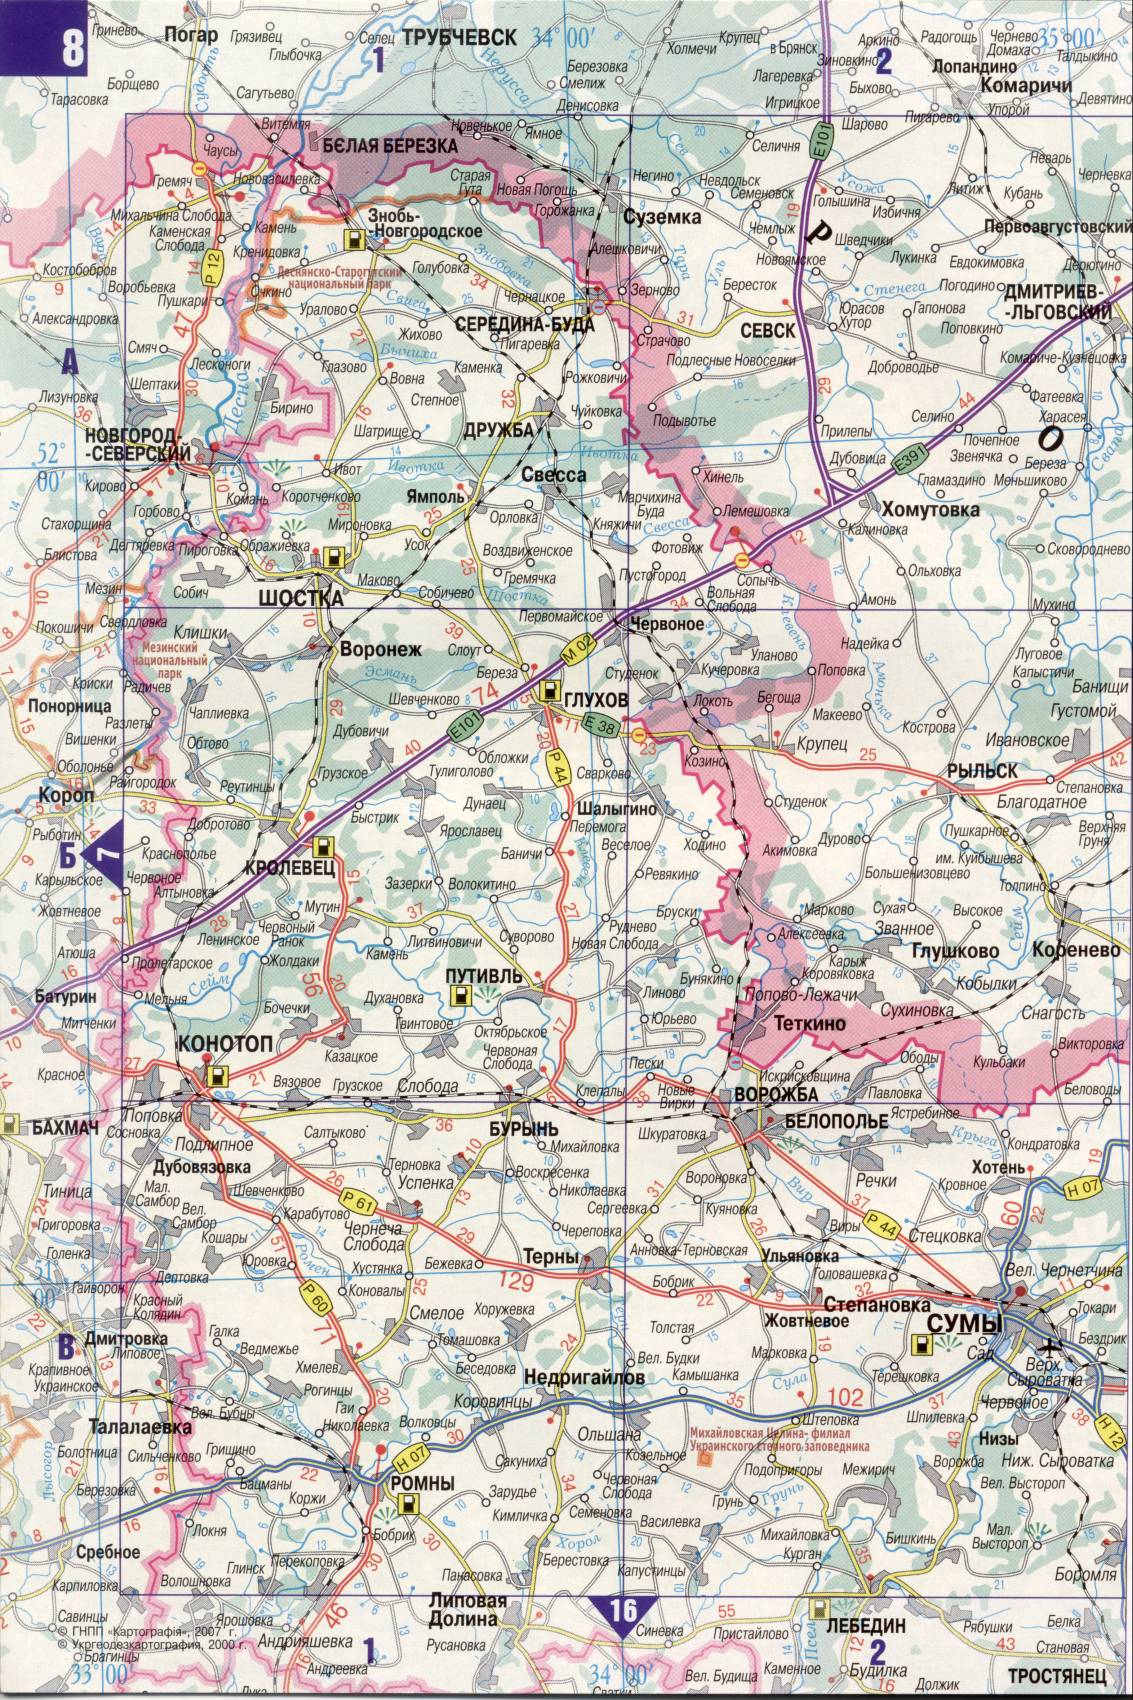 Karte der Ukraine. Detaillierte Straßenkarte der Ukraine avtomobilnog Satin. kostenlos herunterladen, G0